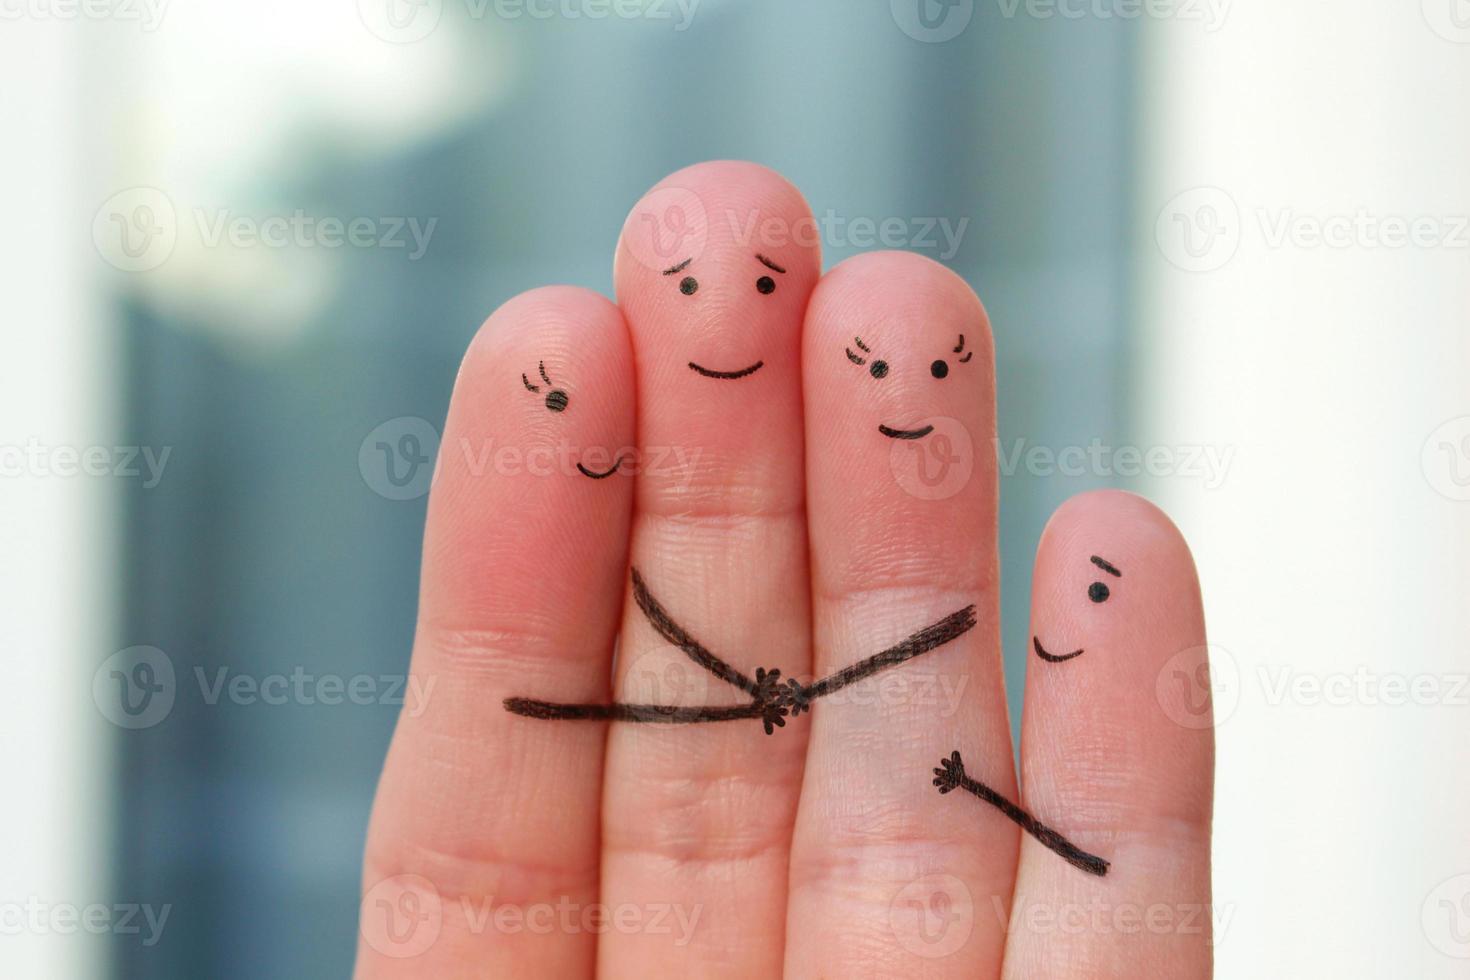 vingers kunst van familie. concept van liefde, vriendschap, geluk. foto